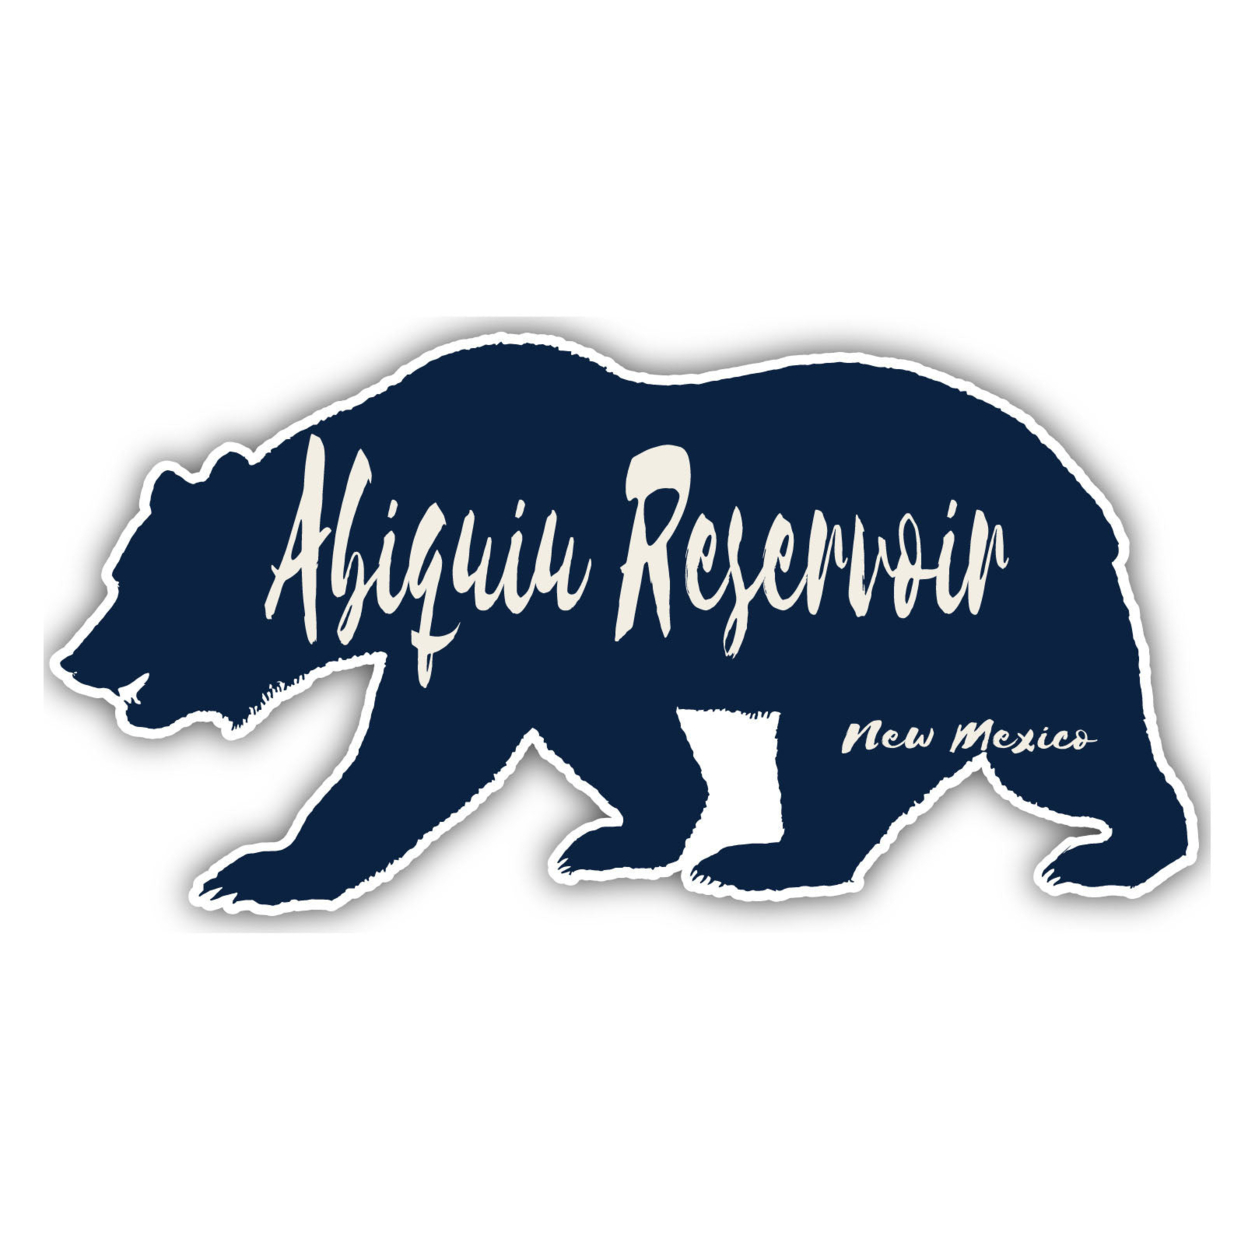 Abiquiu Reservoir New Mexico Souvenir Decorative Stickers (Choose Theme And Size) - Single Unit, 6-Inch, Bear